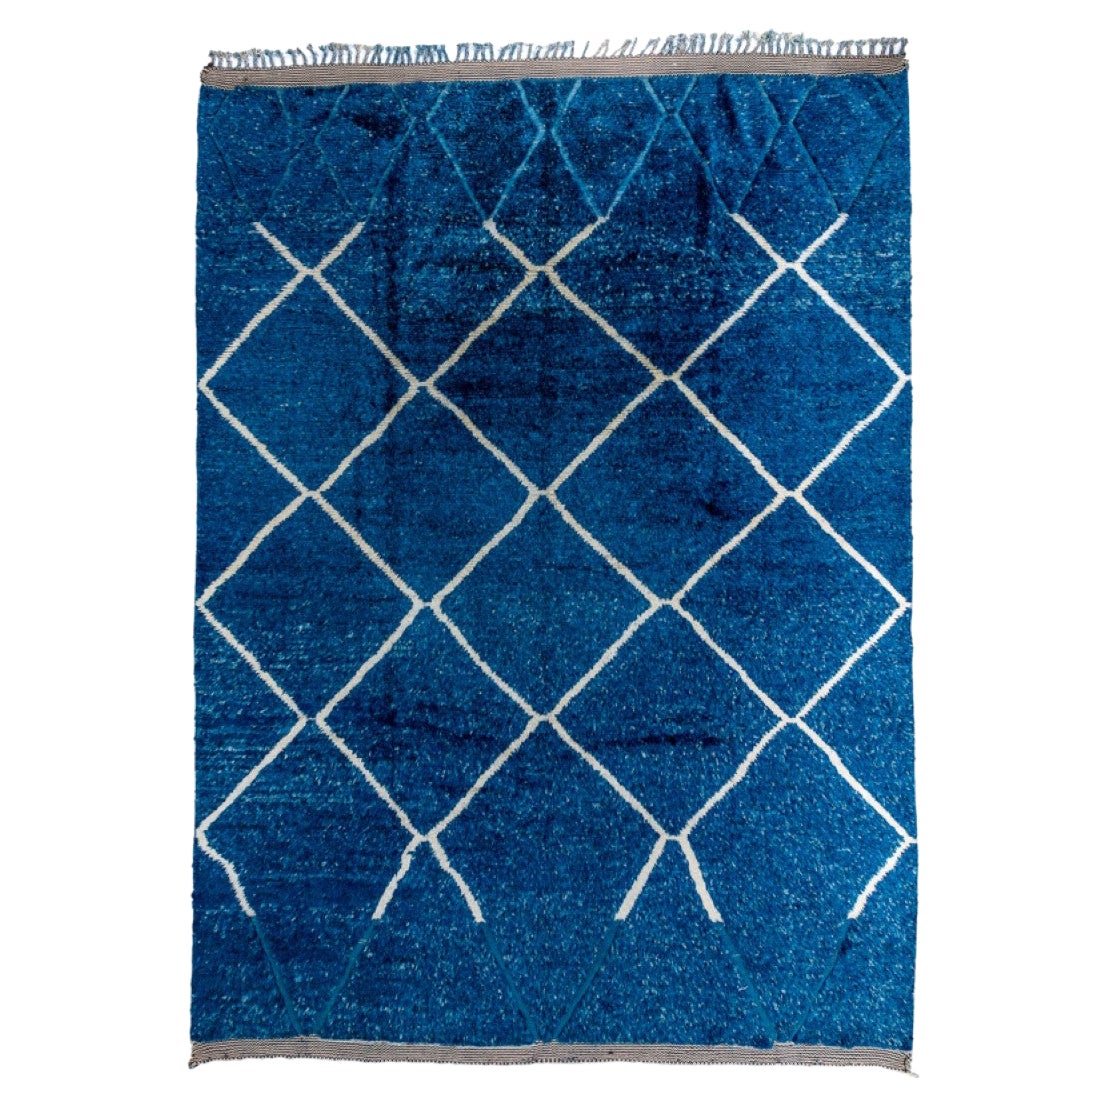 Moderner blauer Denim-Teppich im marokkanischen Design